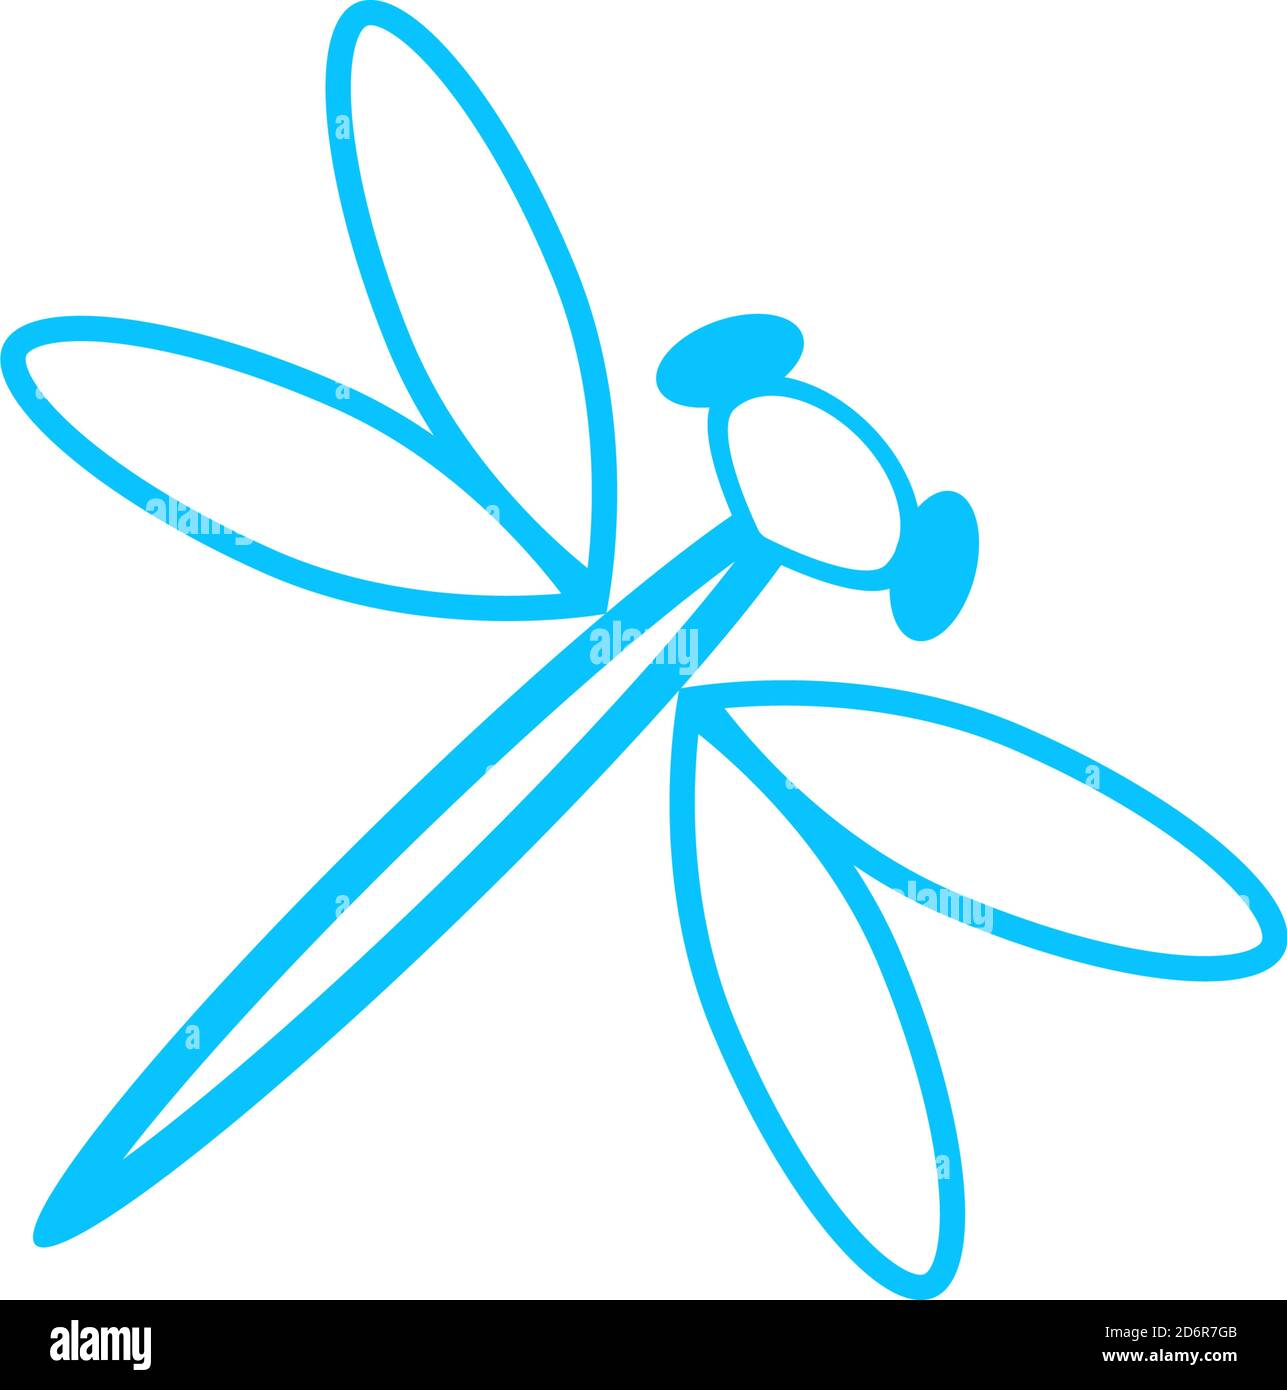 Icône Dragonfly plate. Pictogramme bleu sur fond blanc. Symbole d'illustration vectorielle Illustration de Vecteur